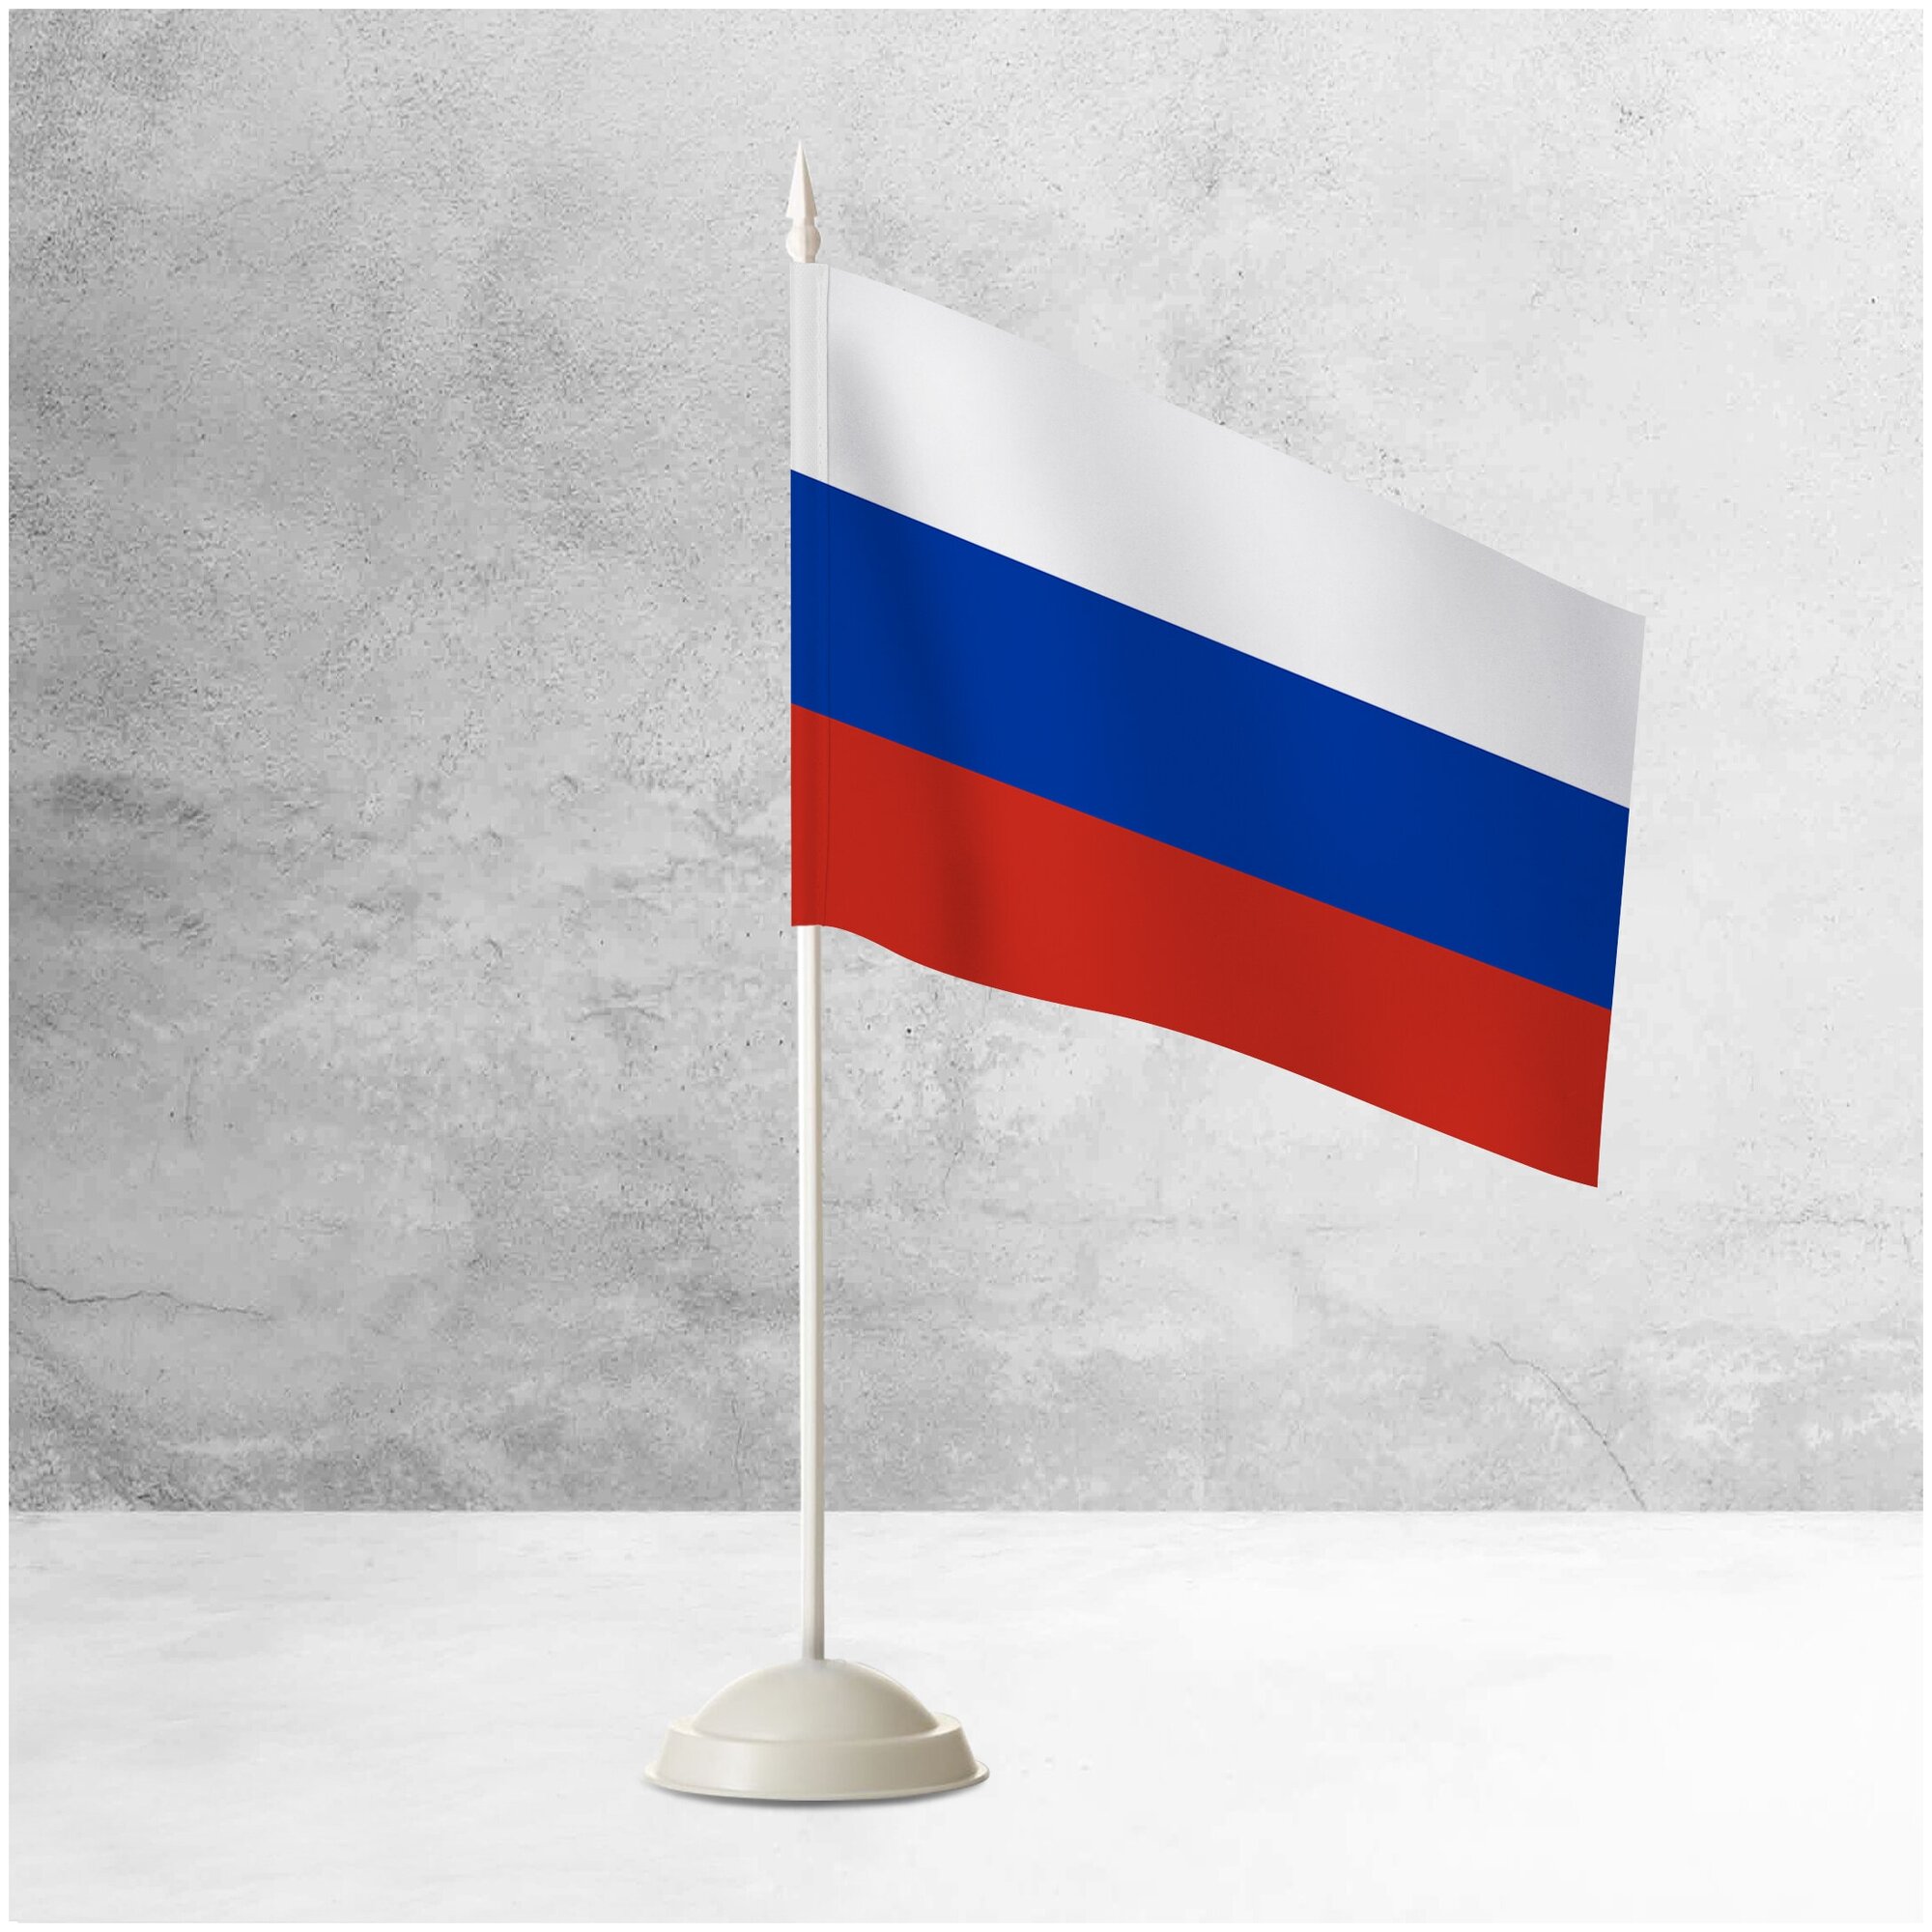 Настольный флаг России на пластиковой белой подставке / Флажок России настольный 15x22 см. на подставке